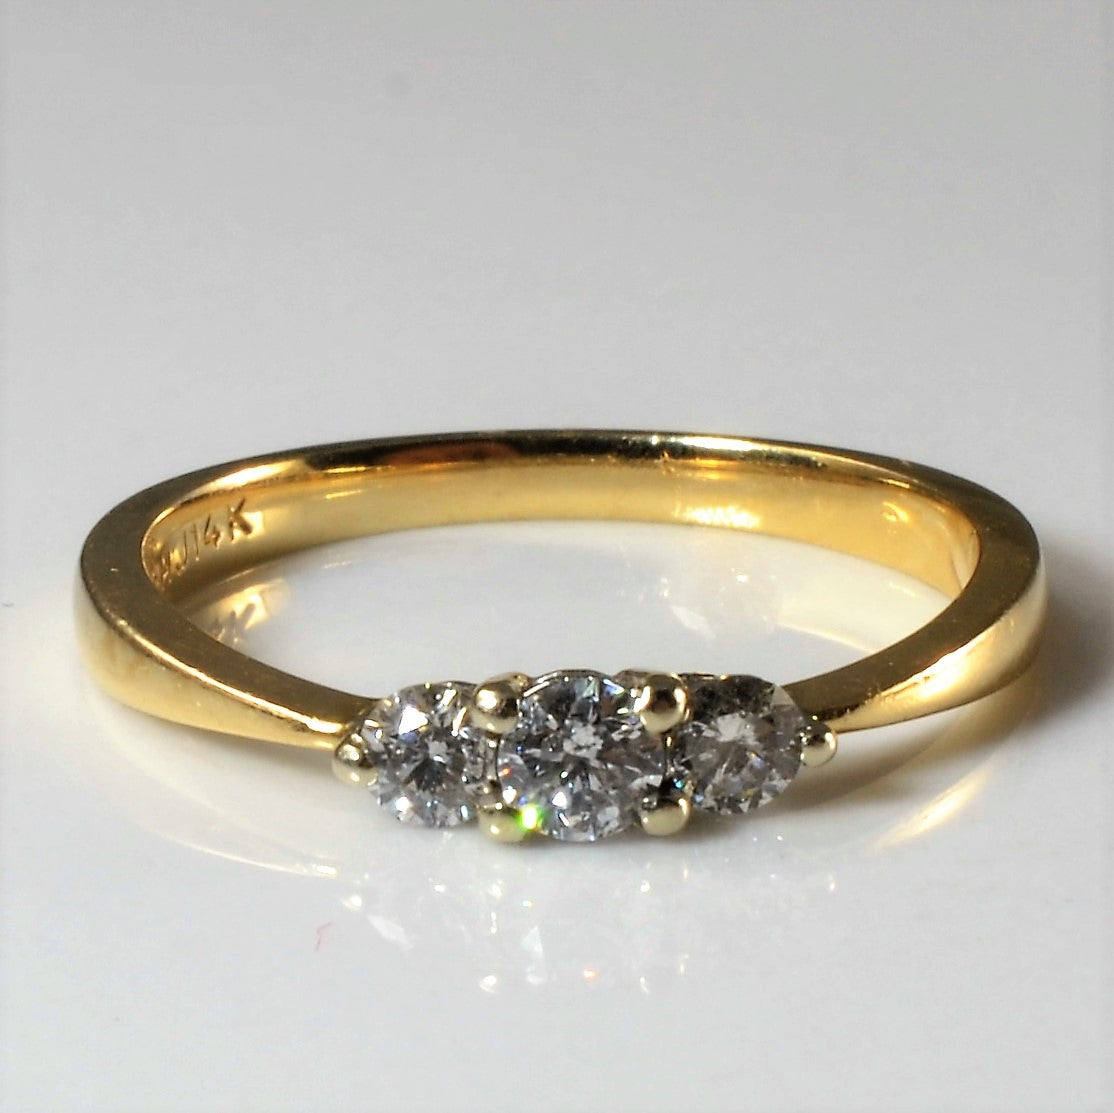 Petite Three Stone Diamond Ring | 0.25ctw | SZ 6.25 |